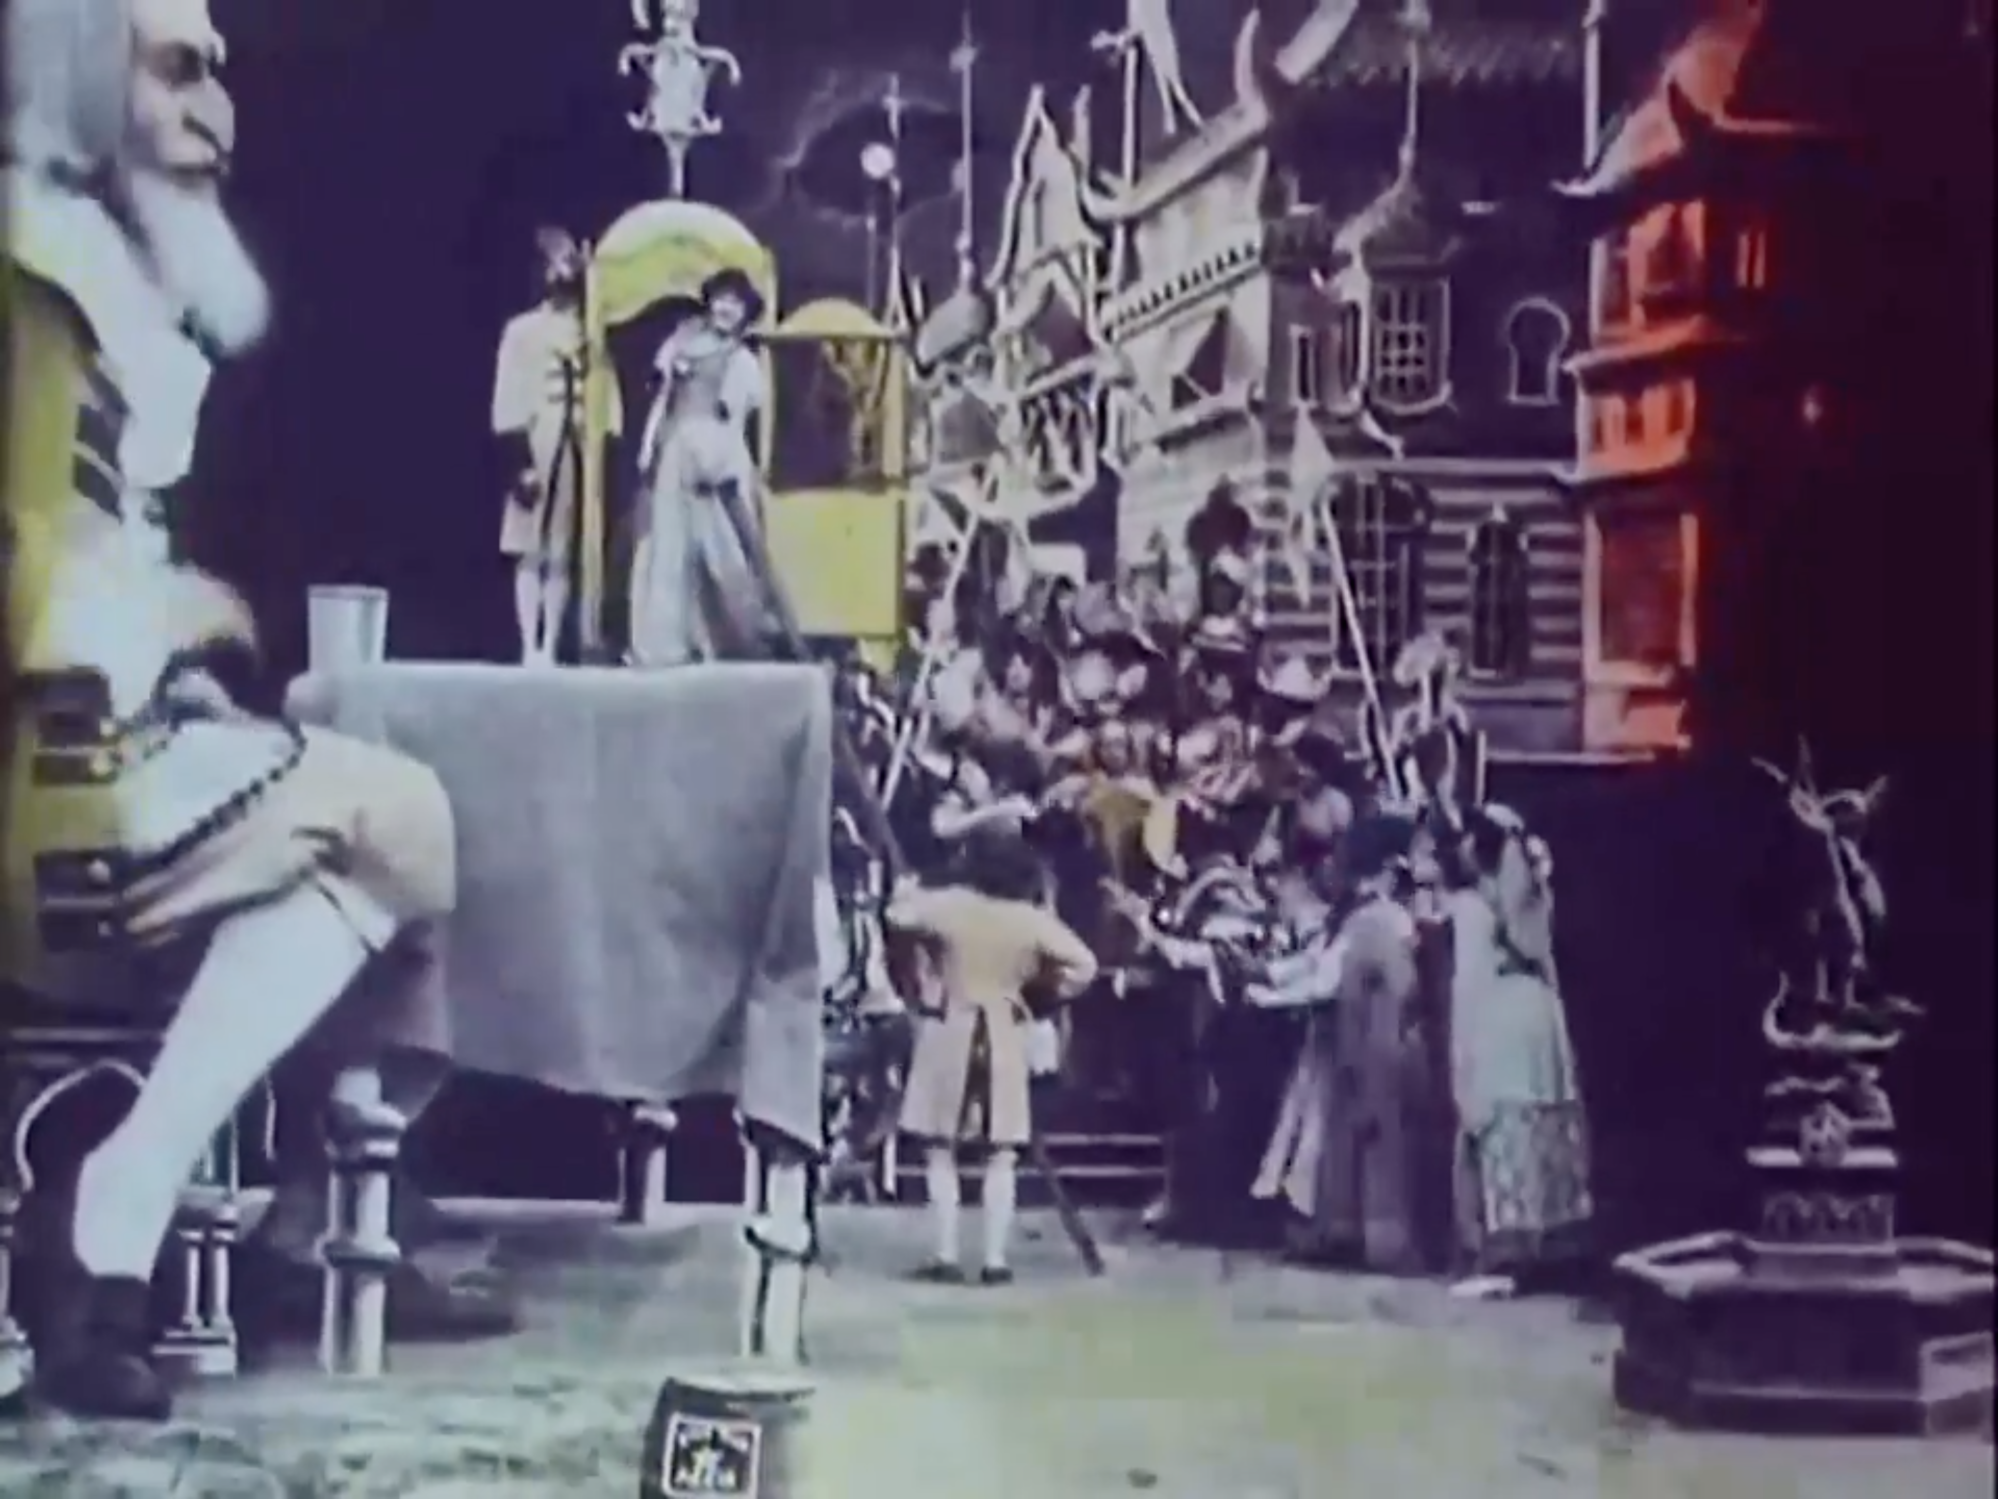 Le Voyage de Gulliver à Lilliput et chez les Géants (Georges Méliès, 1902). Capture d’écran d’une copie du film colorisée au pochoir disponible en ligne.